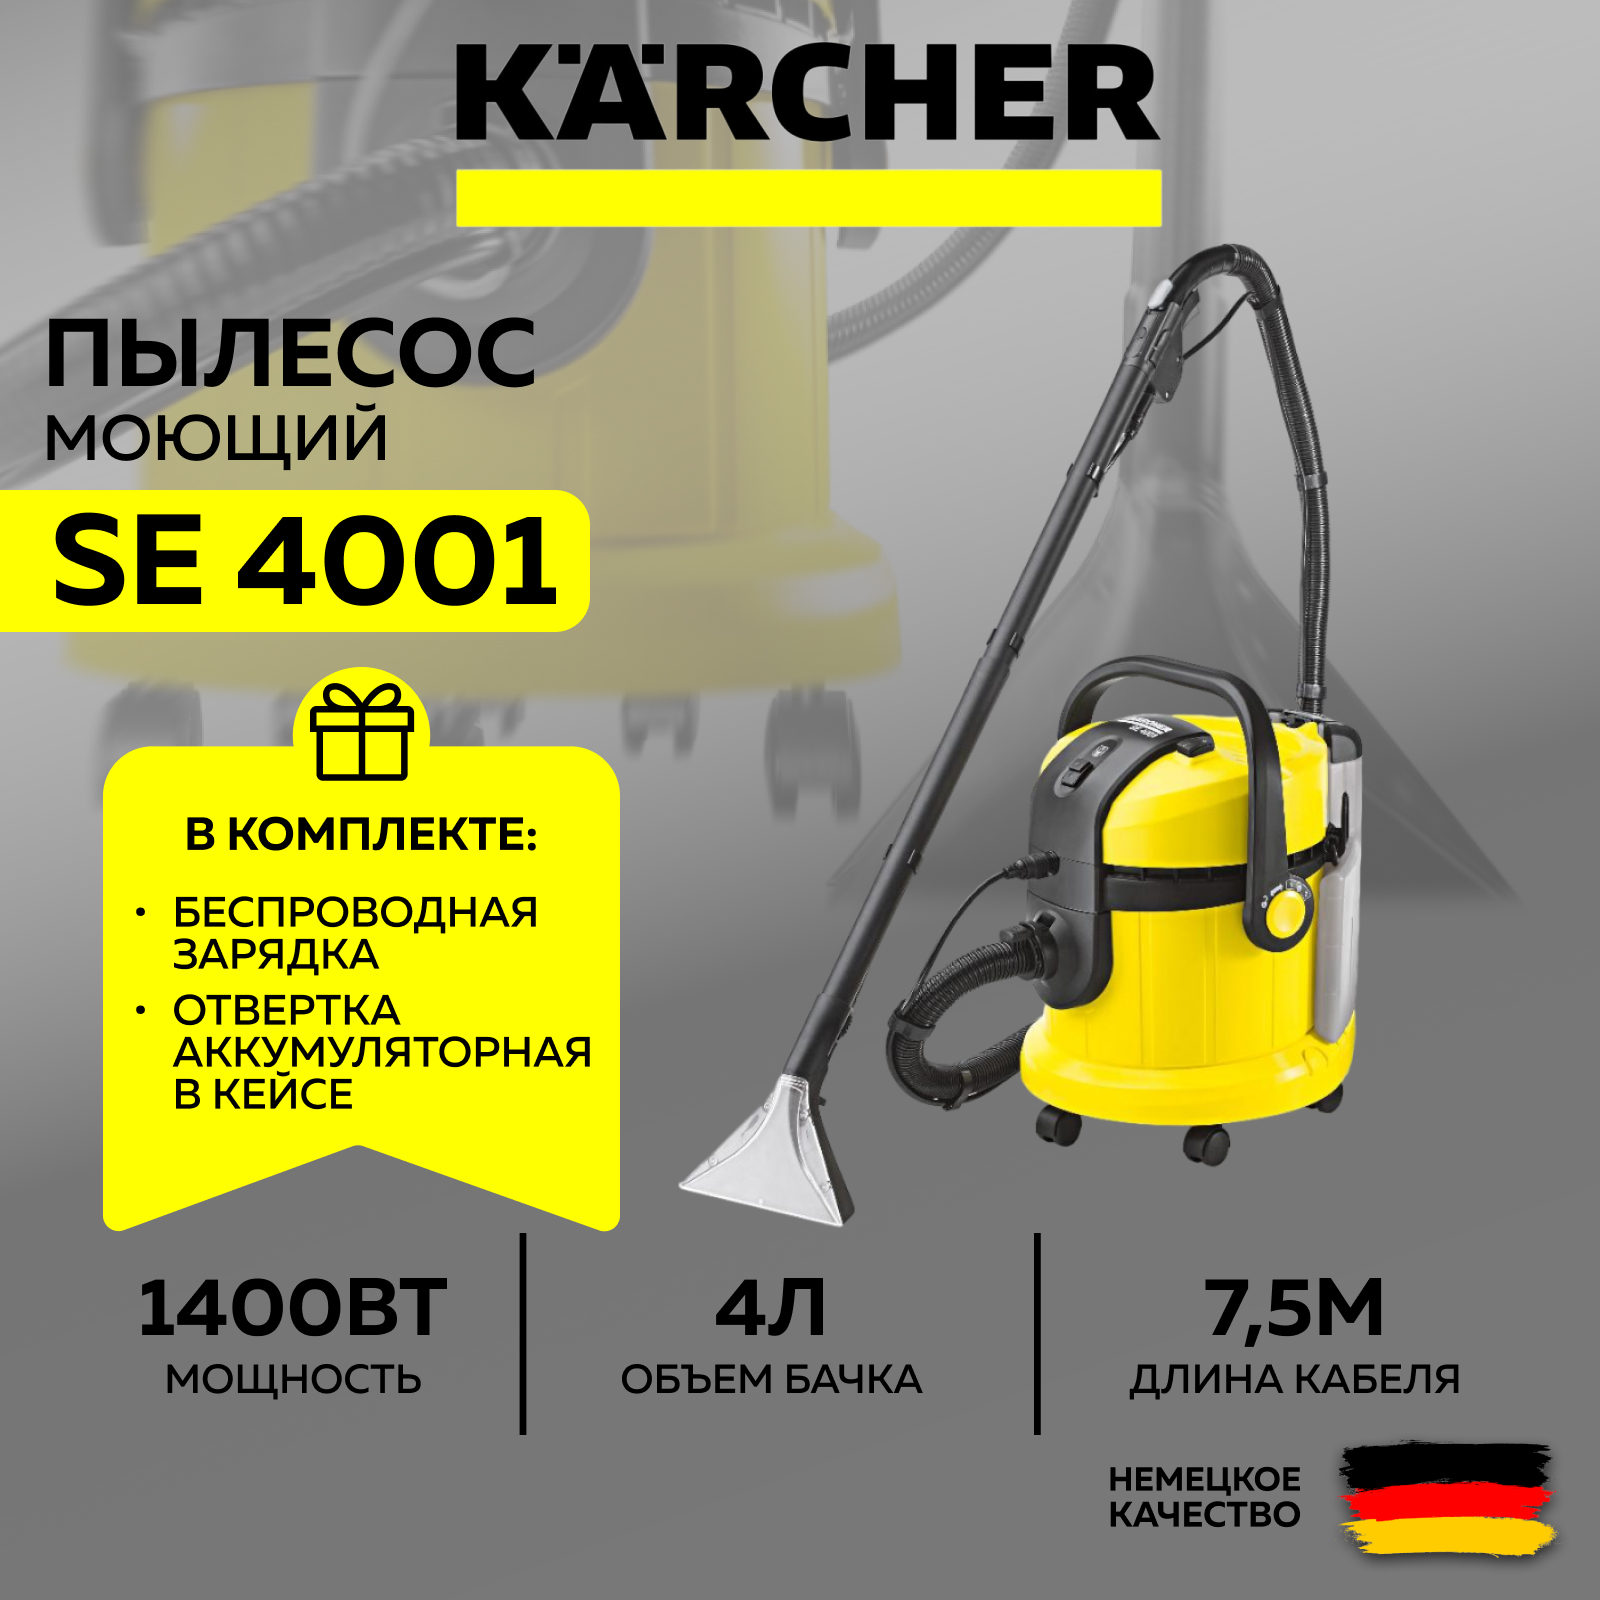 Моющий пылесос Karcher SE 4001 1.081-130.0 + отвертка аккумуляторная+ночник-зарядка (SET) пылесос моющий karcher se 5 100 1400 вт 4 л